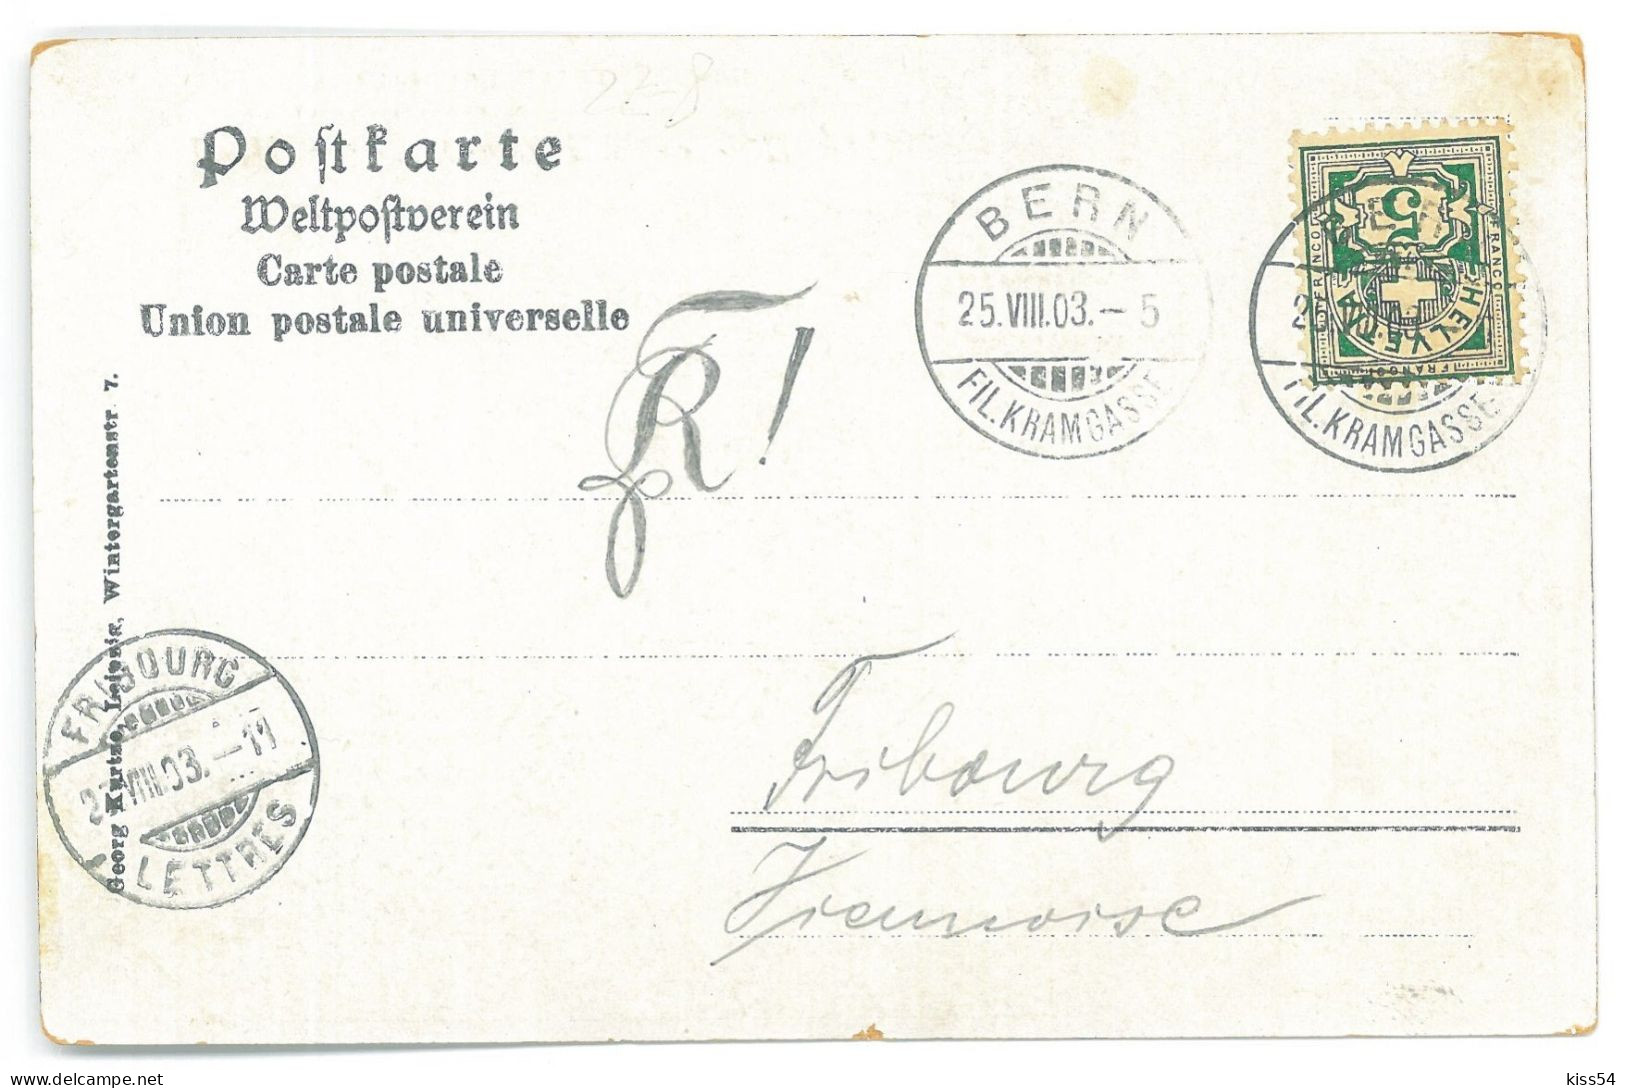 RO - 25062 TARAF Vladescu, Litho, Romania - Old Postcard - Used - 1903 - Romania